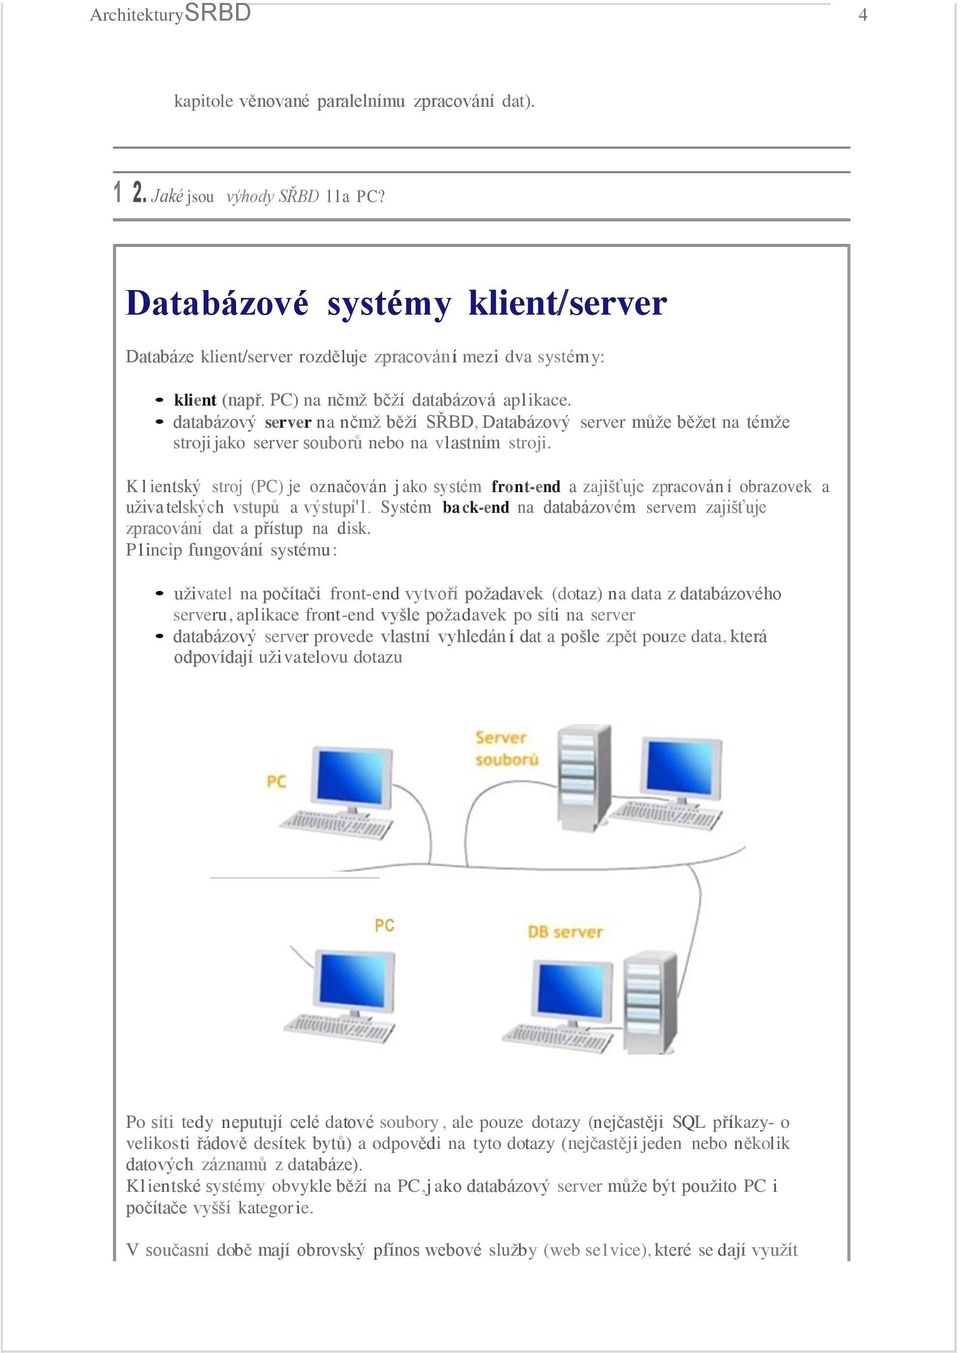 databázový server na nčmž běží SŘBD, Databázový server může běžet na témže stroji jako server souborů nebo na vlastním stroji.